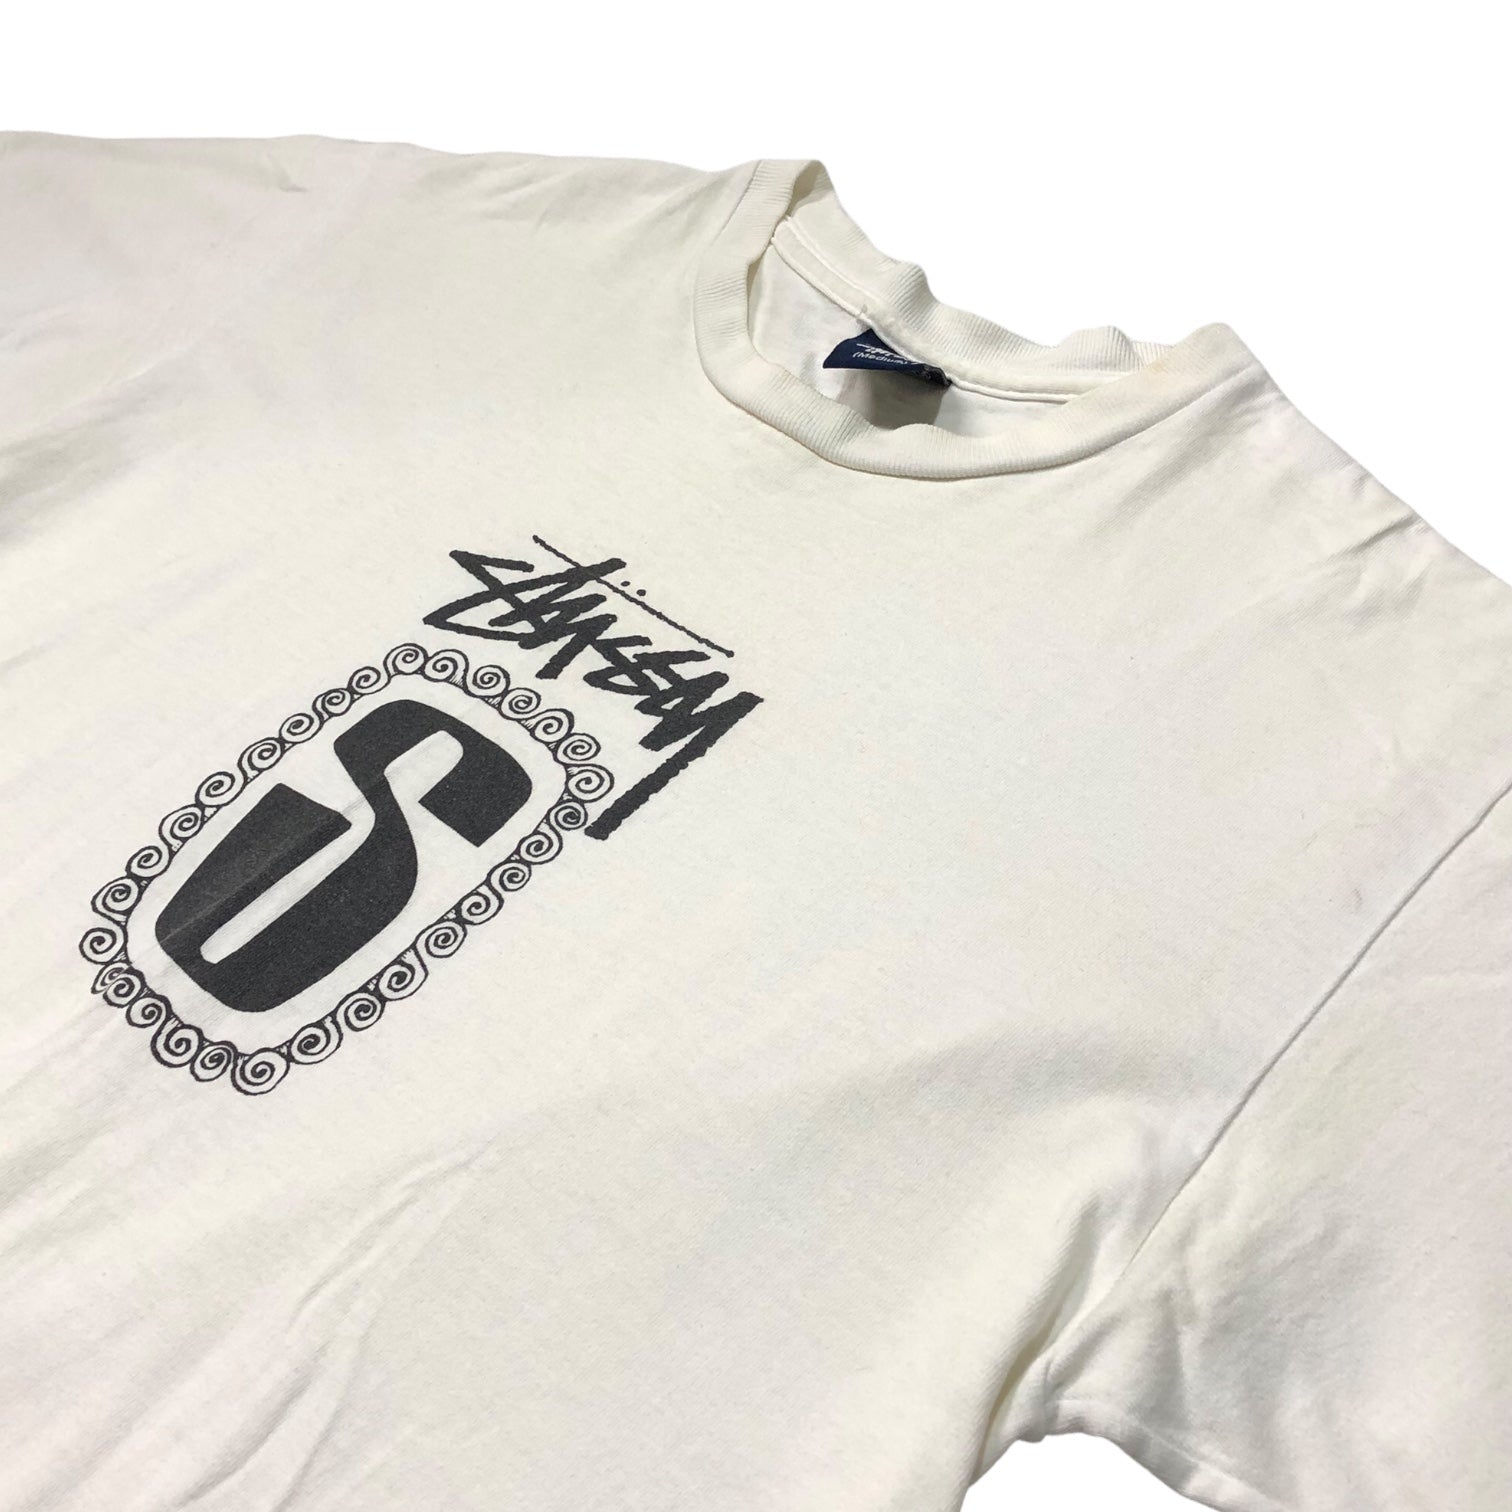 STUSSY(ステューシー) 90's~00's center logo ロゴ Tシャツ 紺タグ SIZE M ホワイト×ホワイト 90～00年代 OLD STUSSY